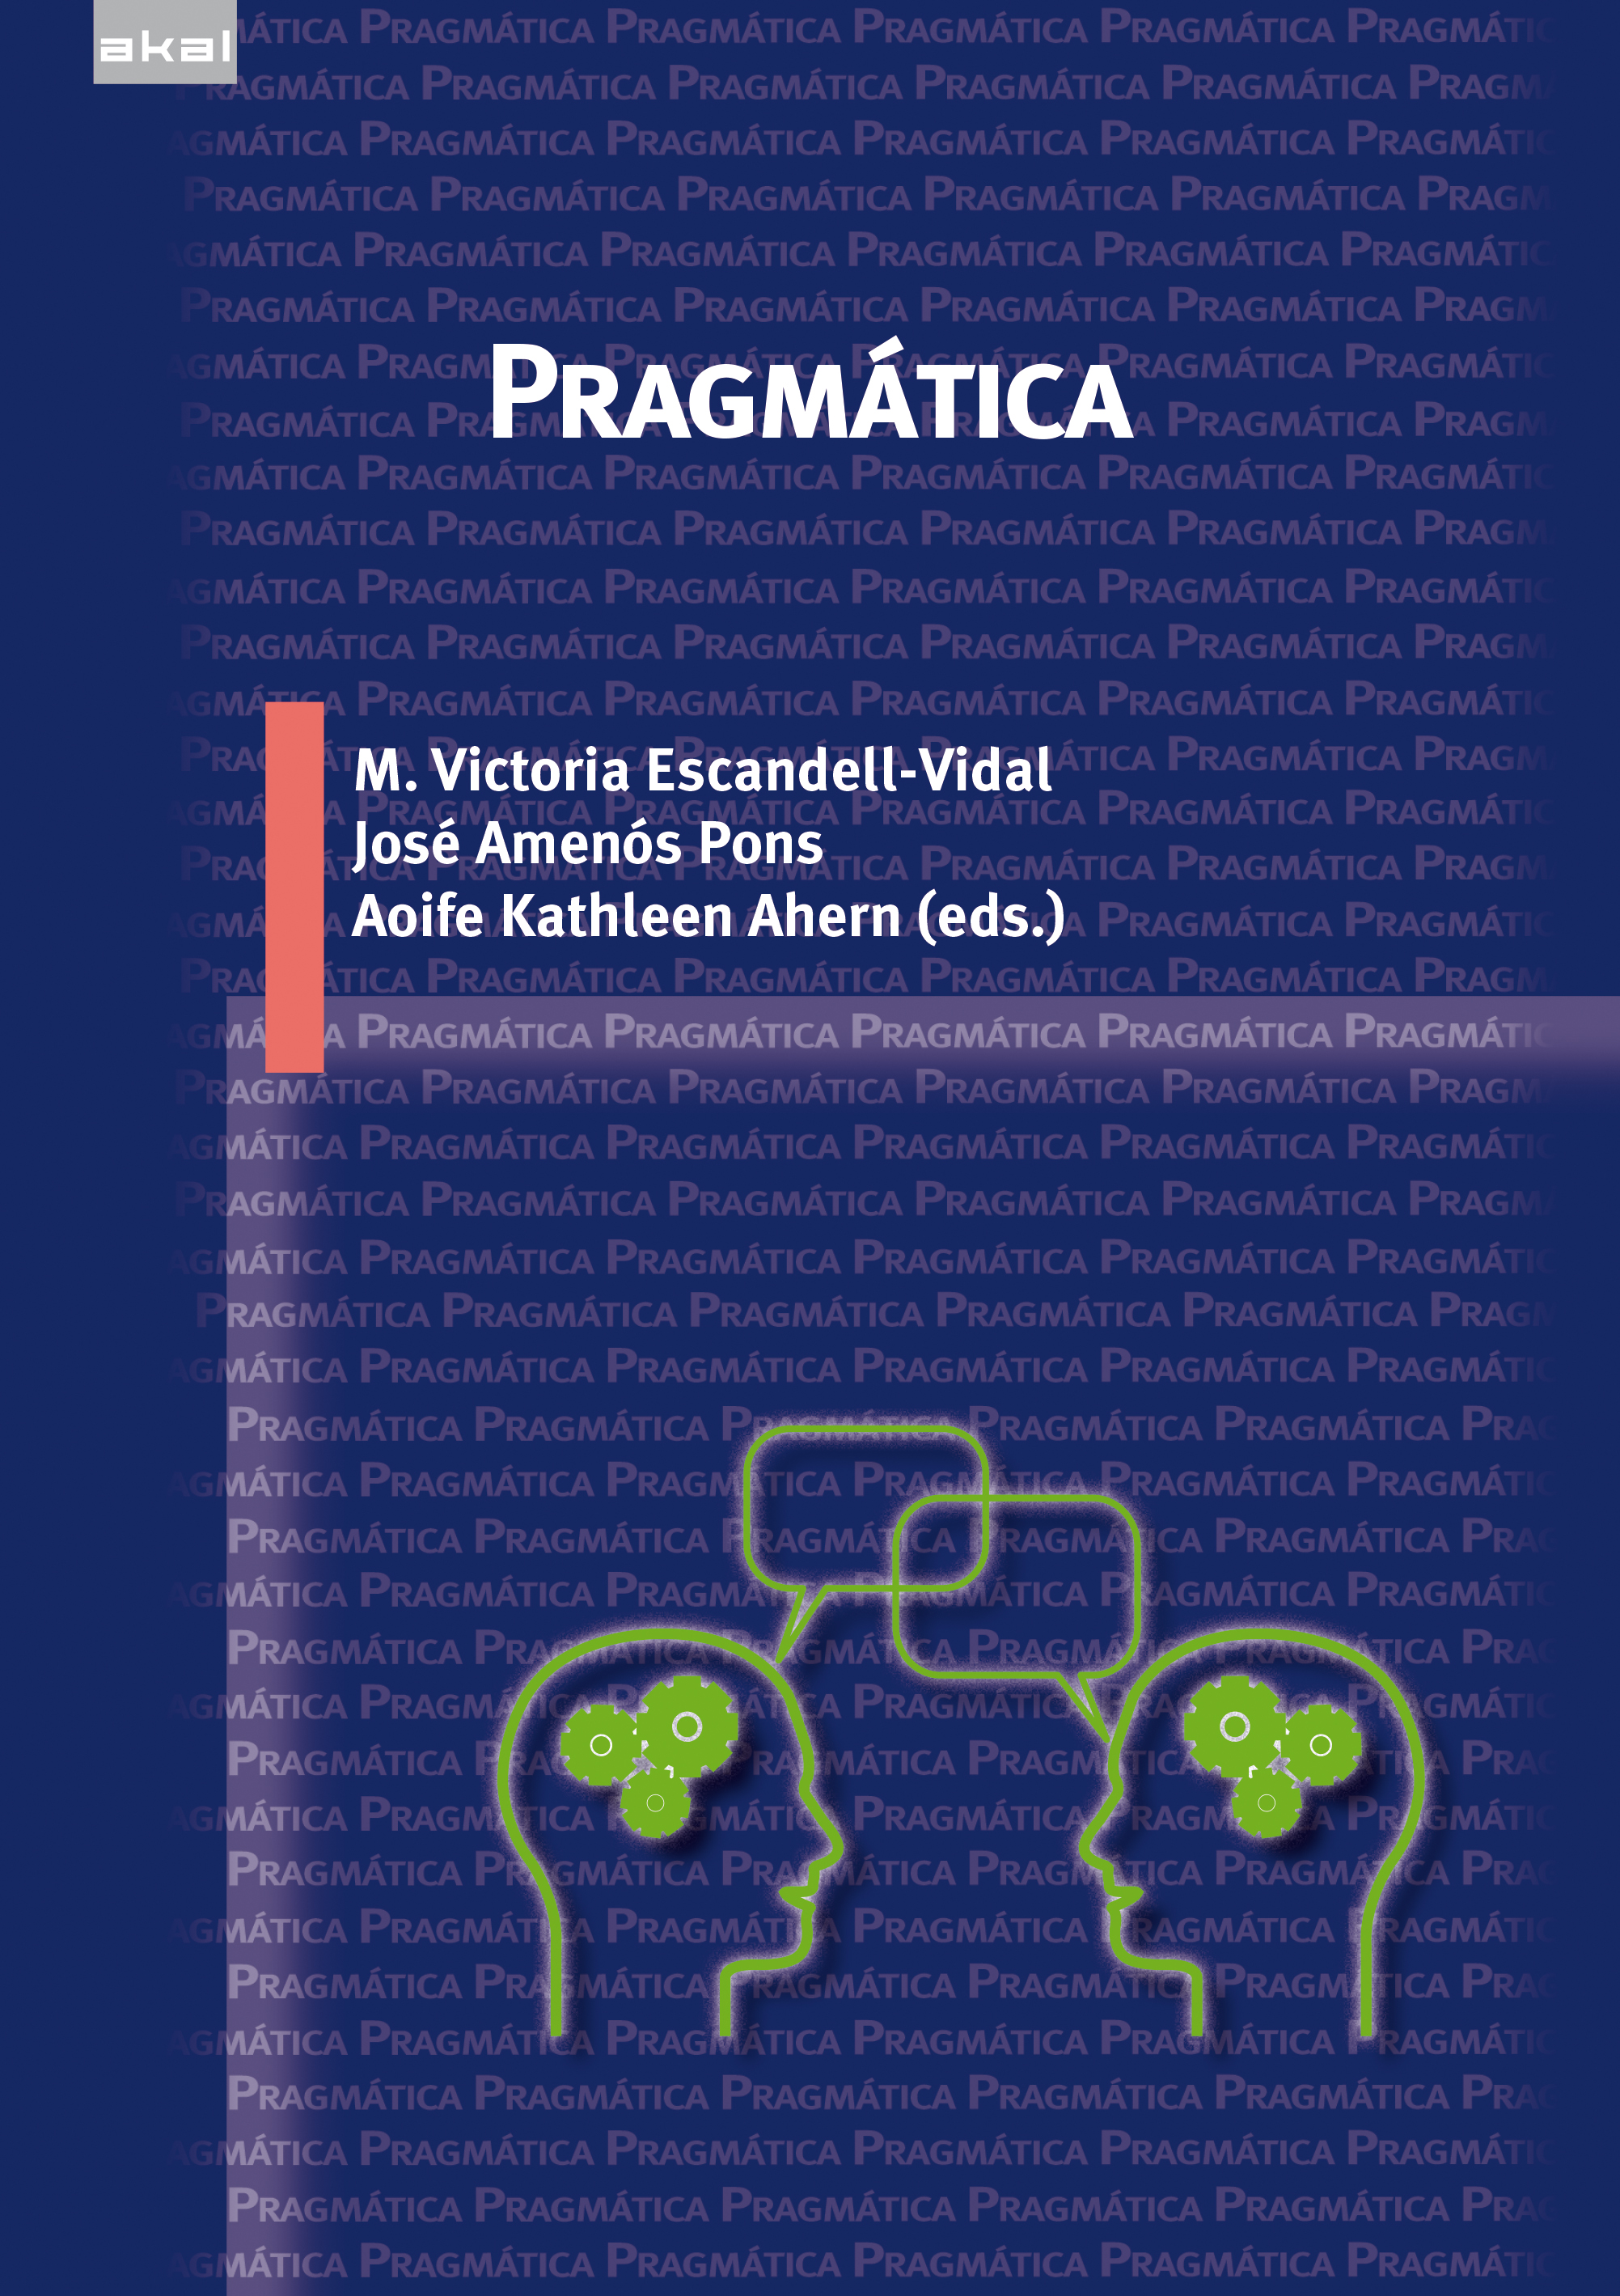 Imagen de portada del libro Pragmática